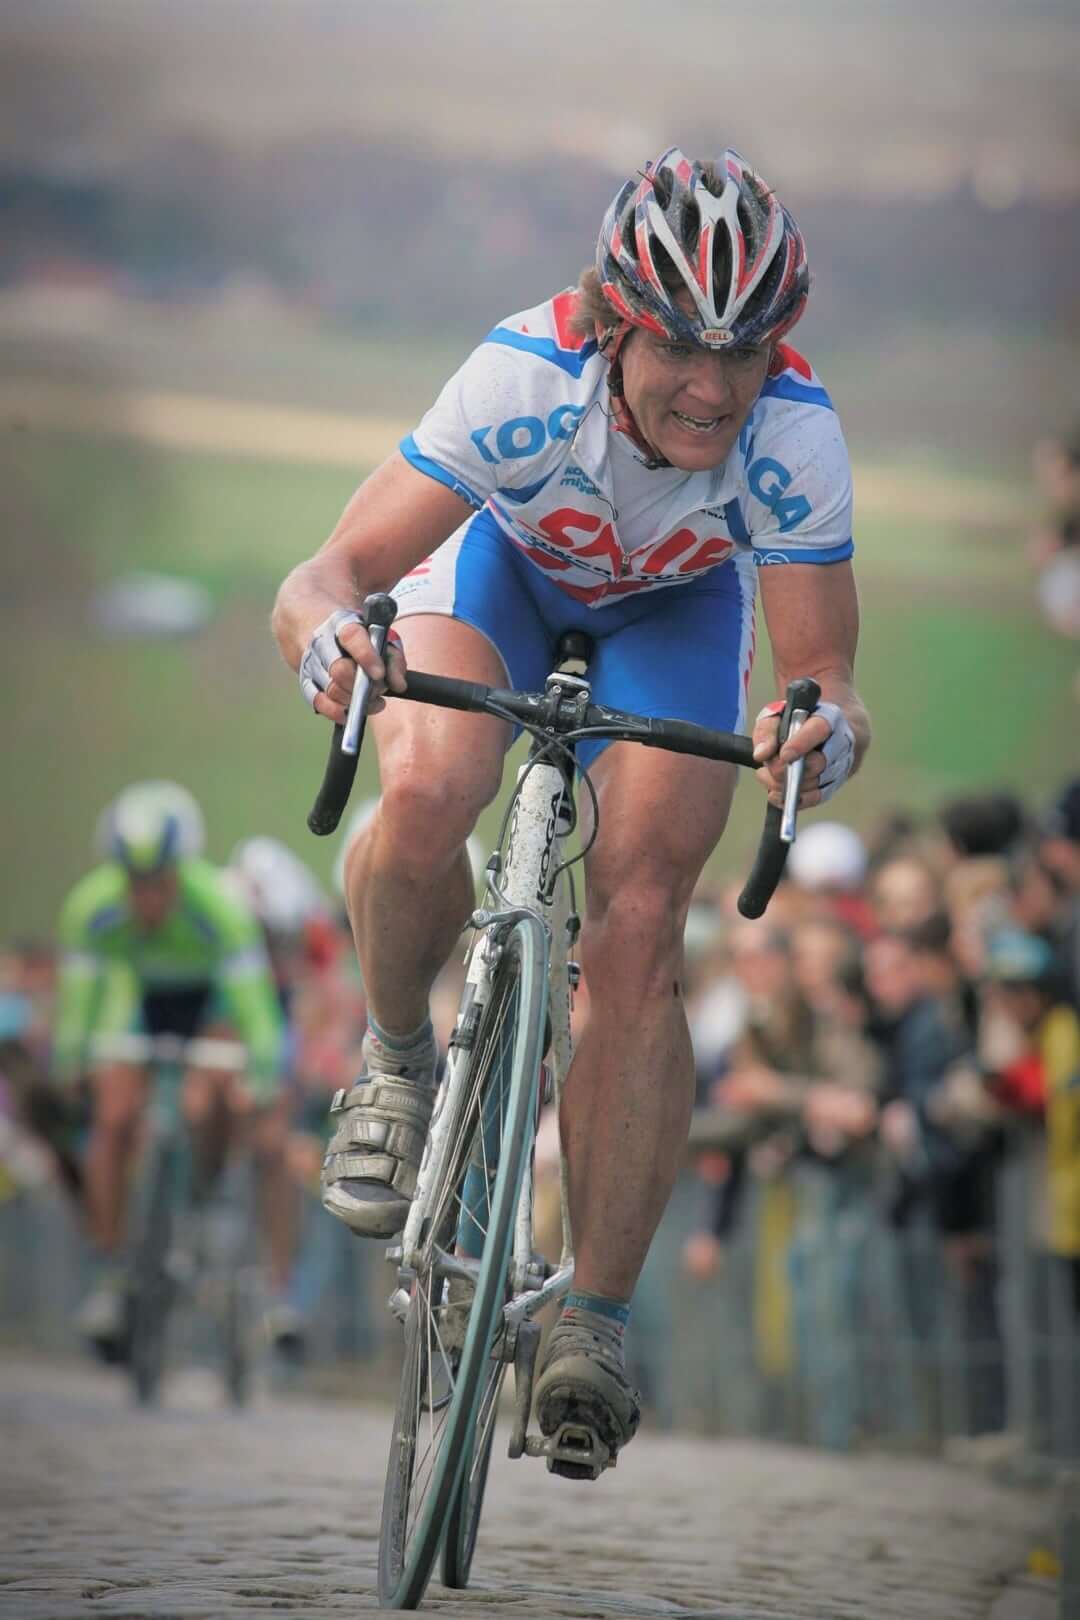 Aart Vierhouten, beroepsrenner in de Ronde van Vlaanderen (2006) voor Pro team Skil-Shimano. Foto: Cor Vos